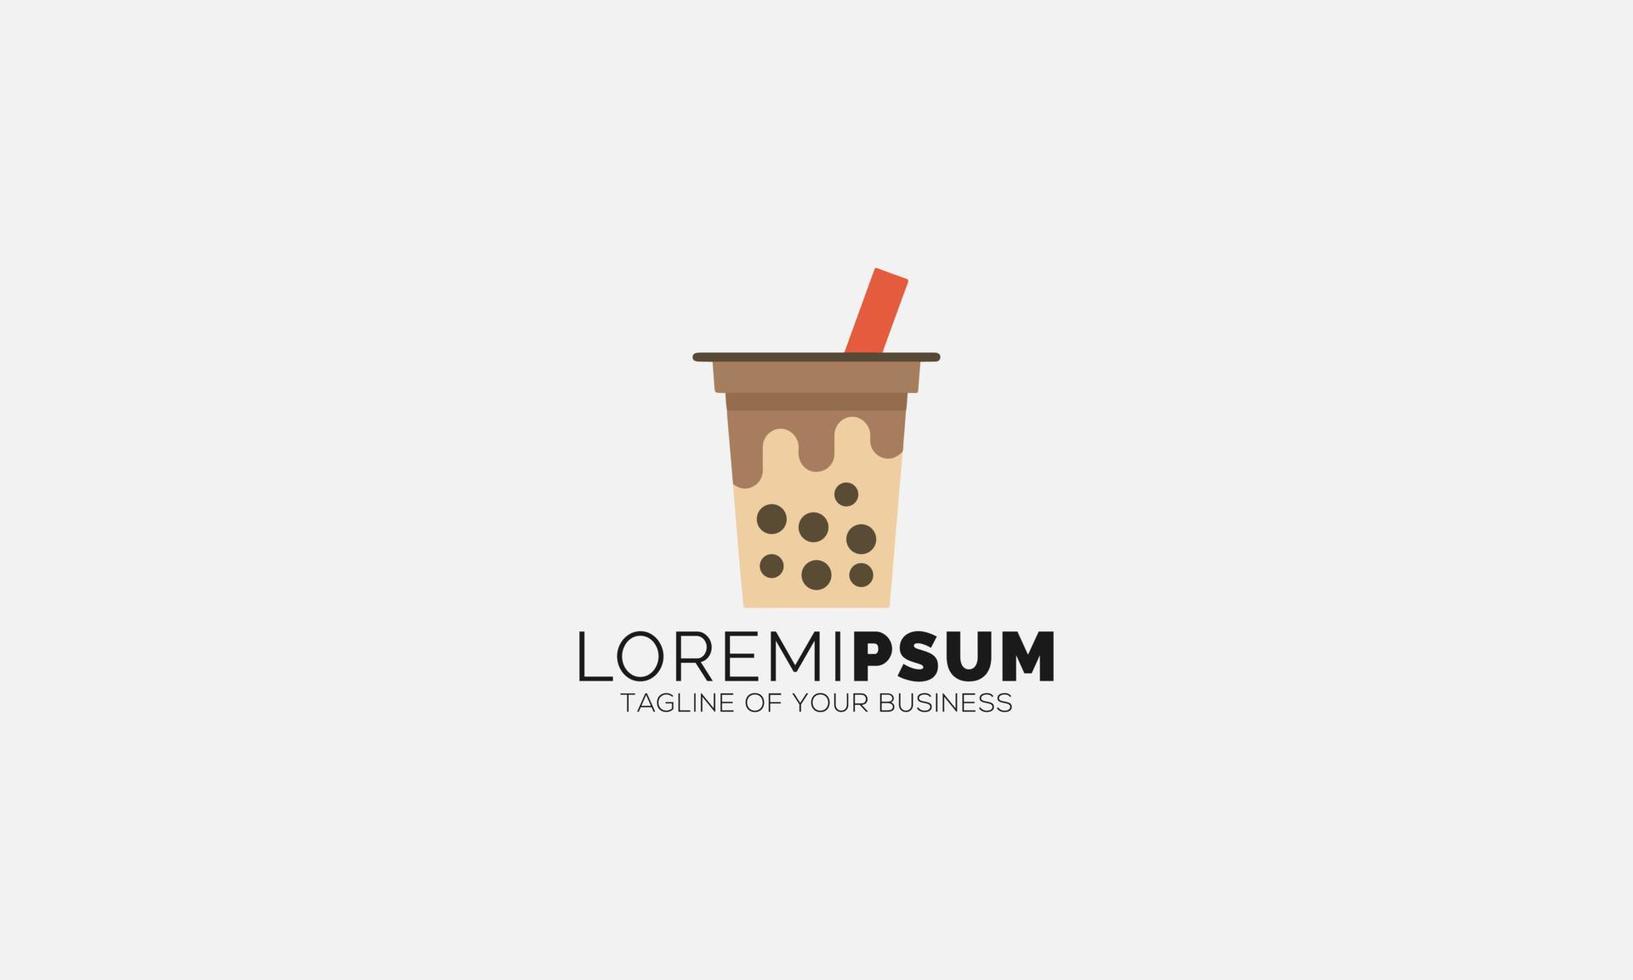 diseño creativo del ejemplo del vector del logotipo de la bebida del café helado y de la leche del café